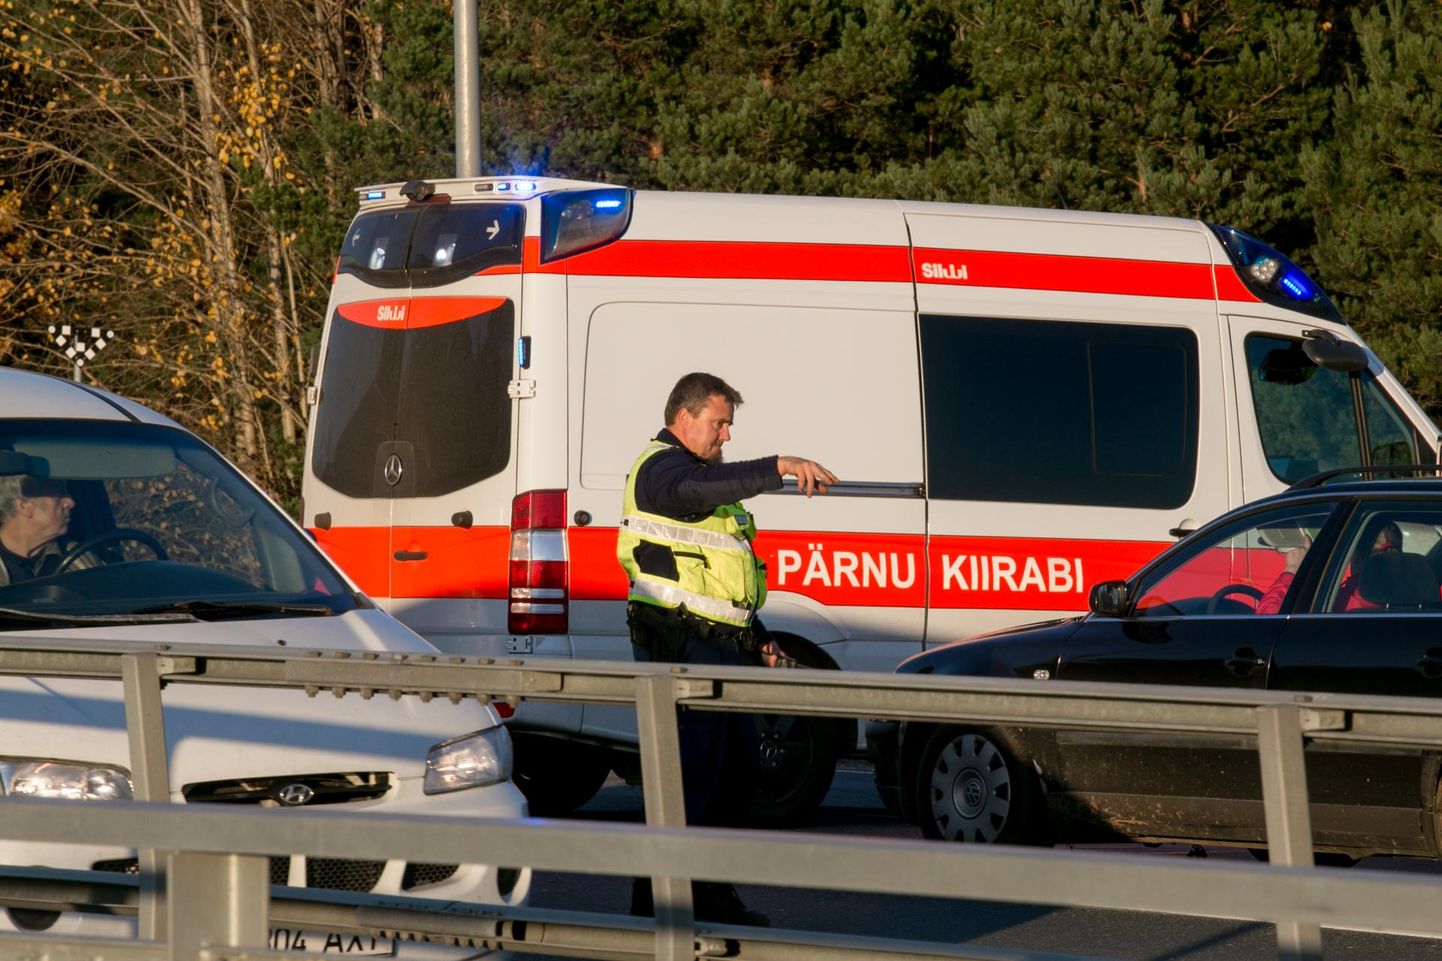 Kokkupõrge toimus Häädemeeste vallas Tallinna–Pärnu–Ikla maantee 140. kilomeetril. Pilt on illustratiivne.